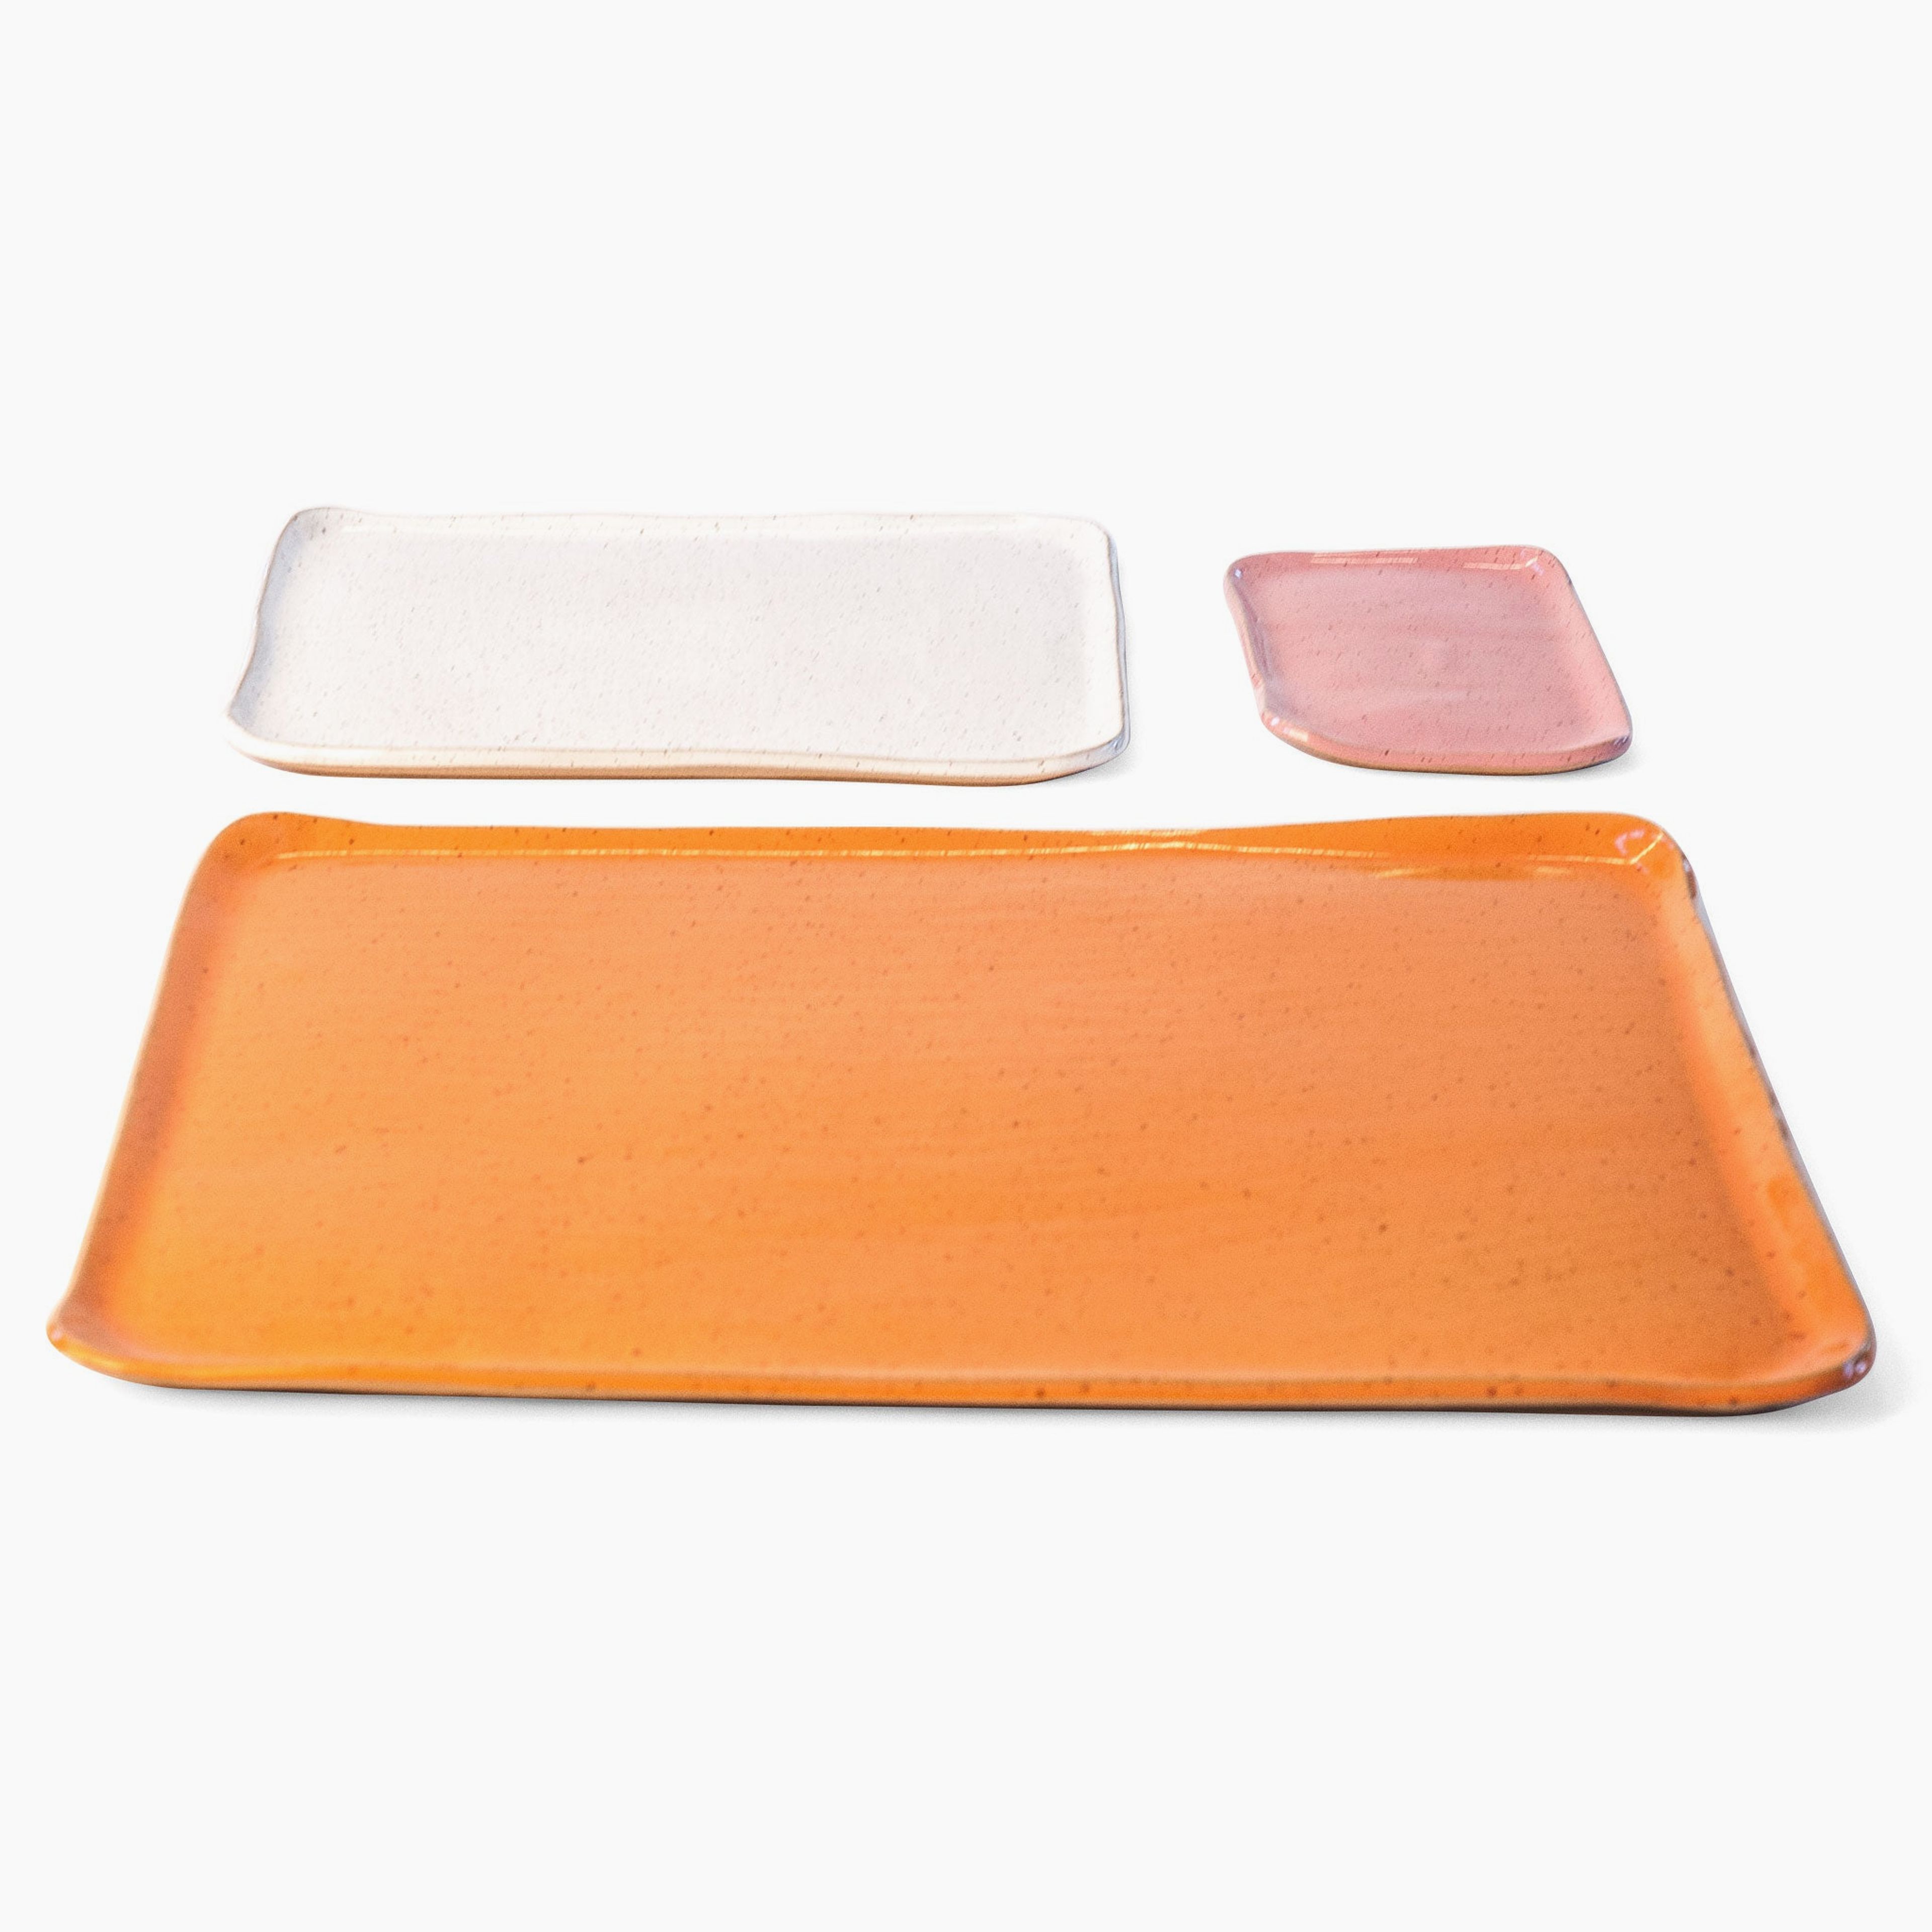 Large Mod Platter Sets